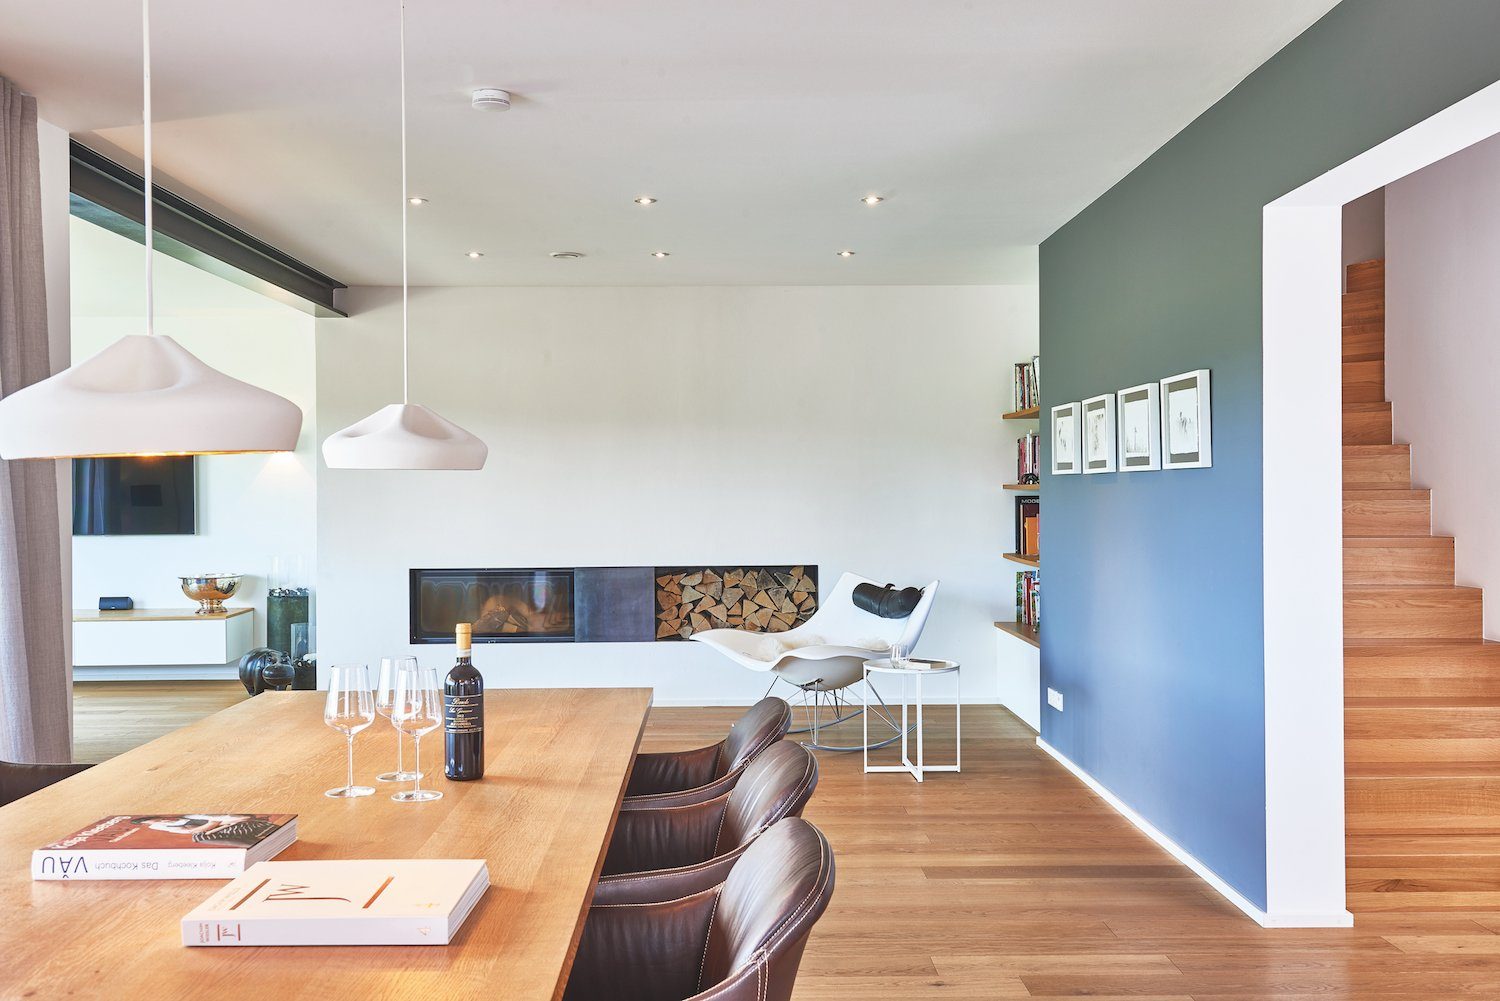 Kundenhaus Mahl - Ein Wohnzimmer voller Möbel auf einem Holztisch - Interior Design Services